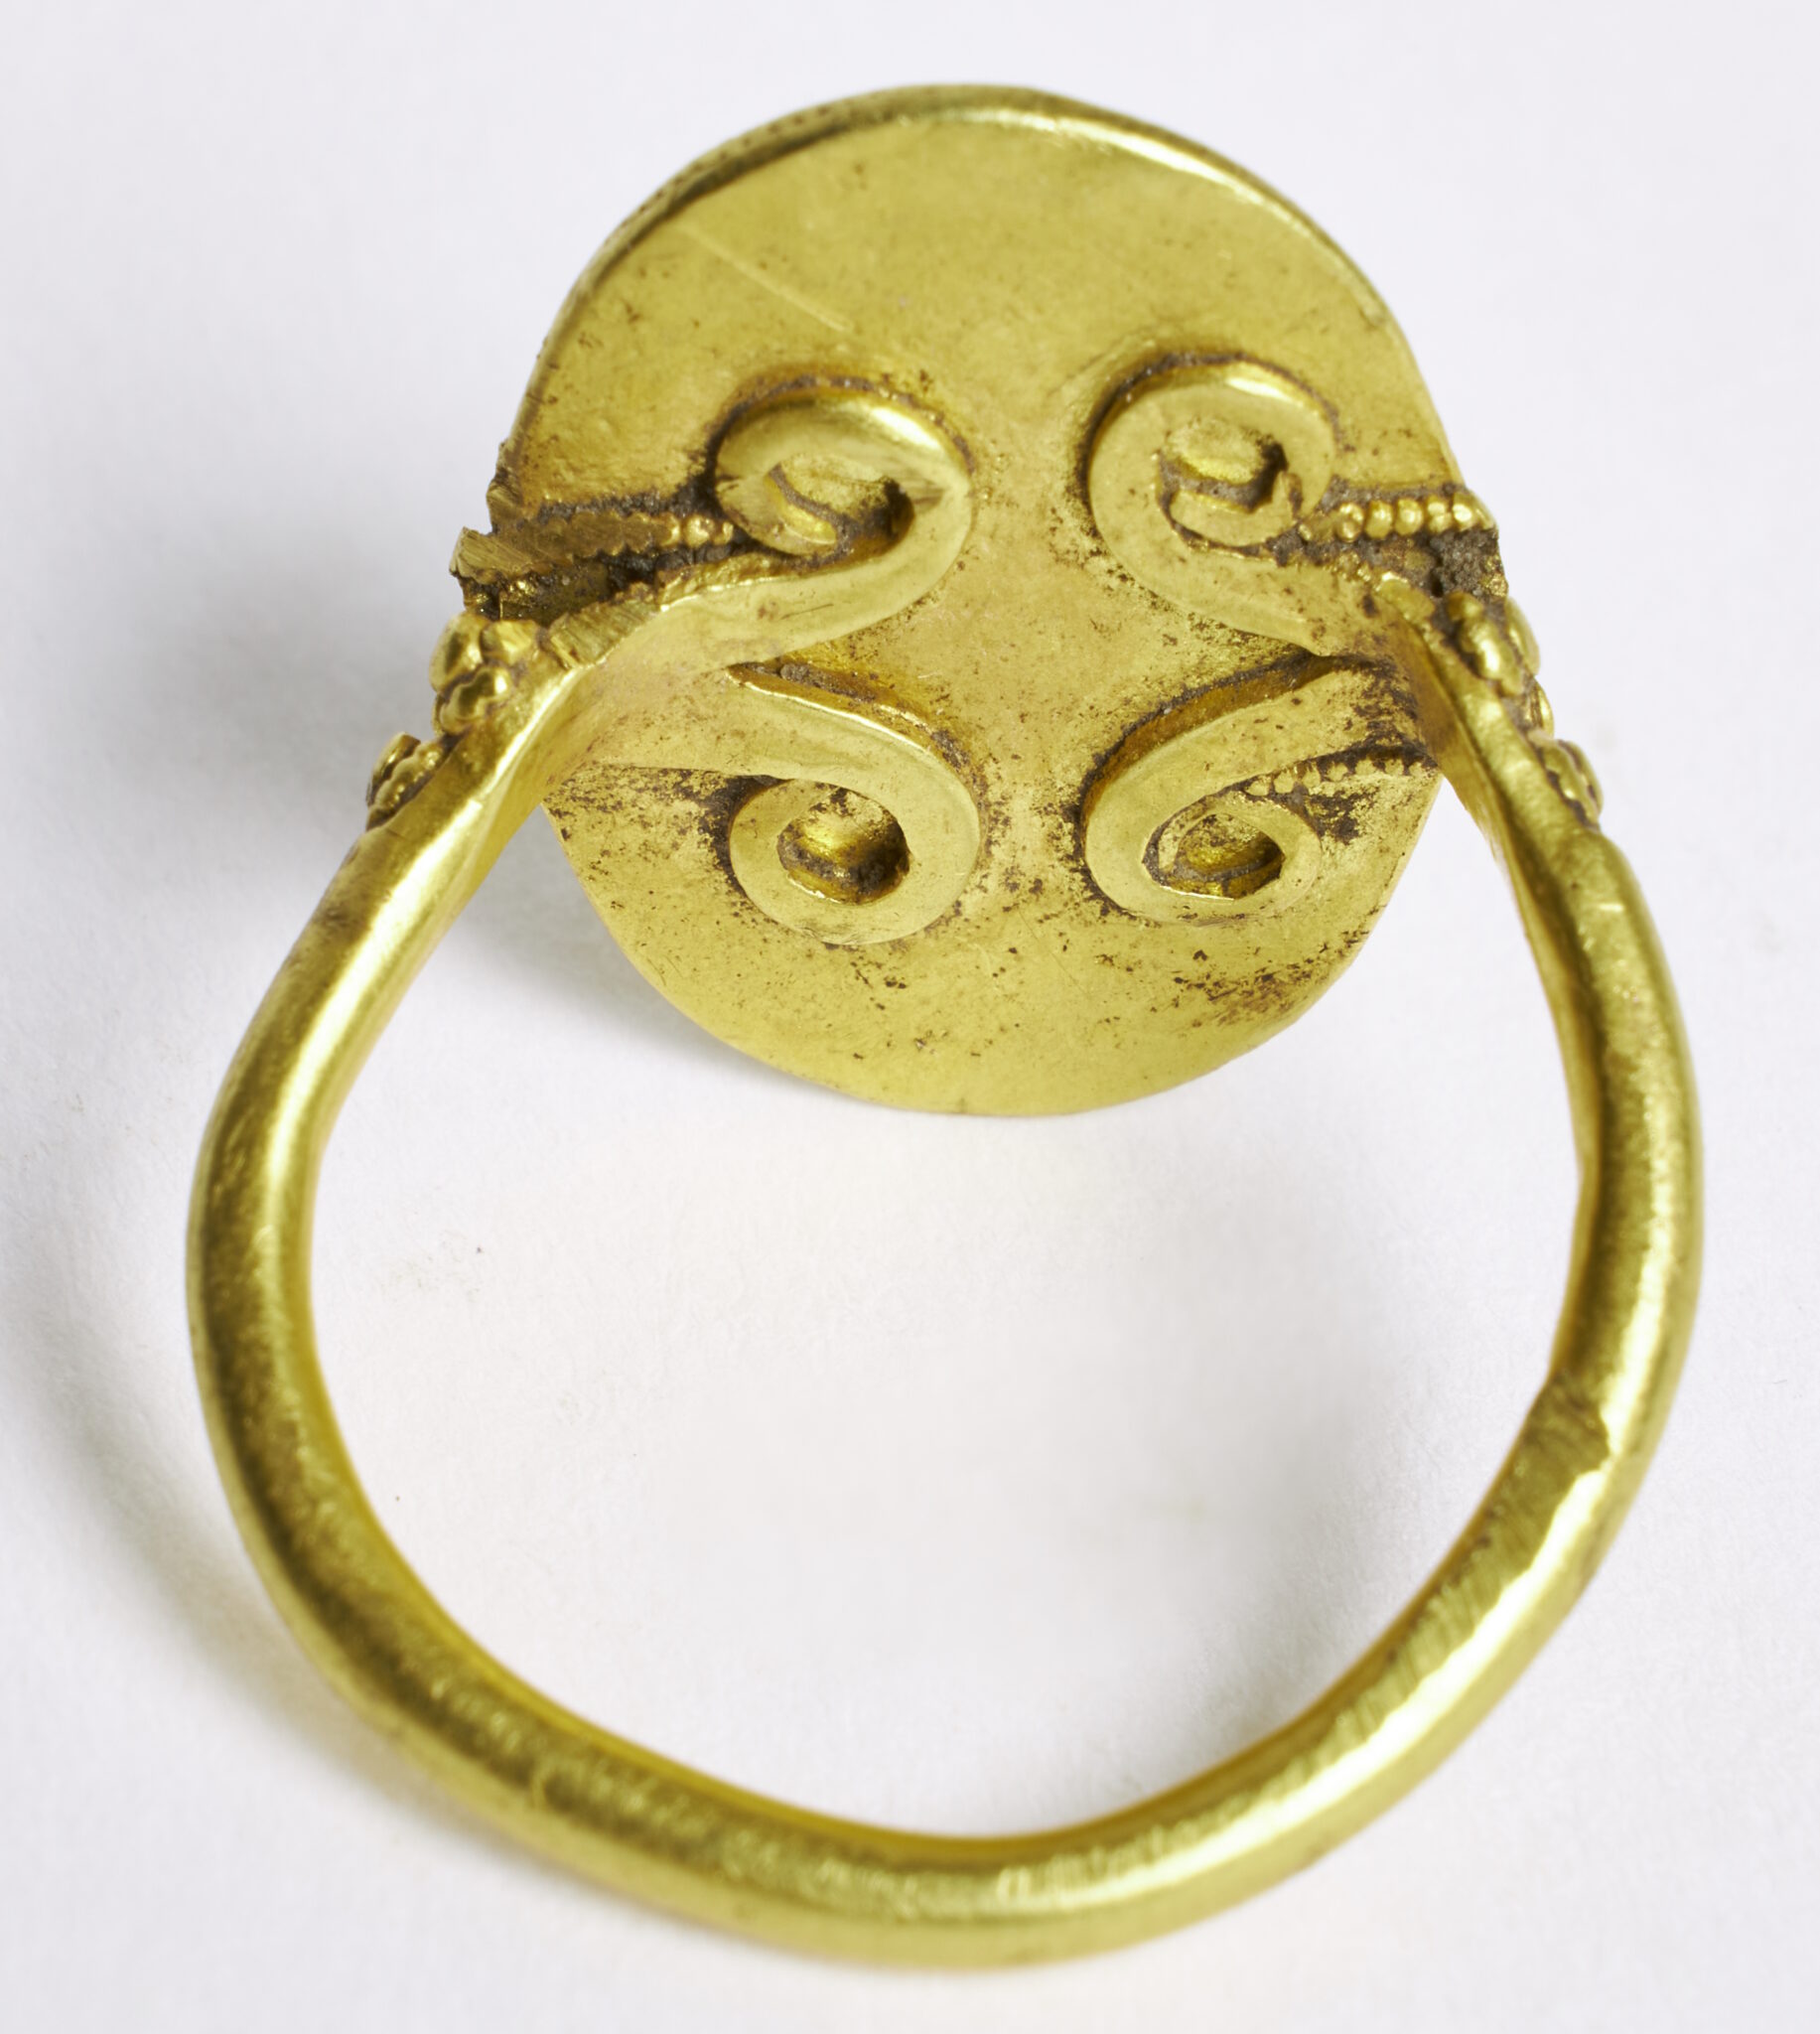 Rare Merovingian gold ring found in Jutland